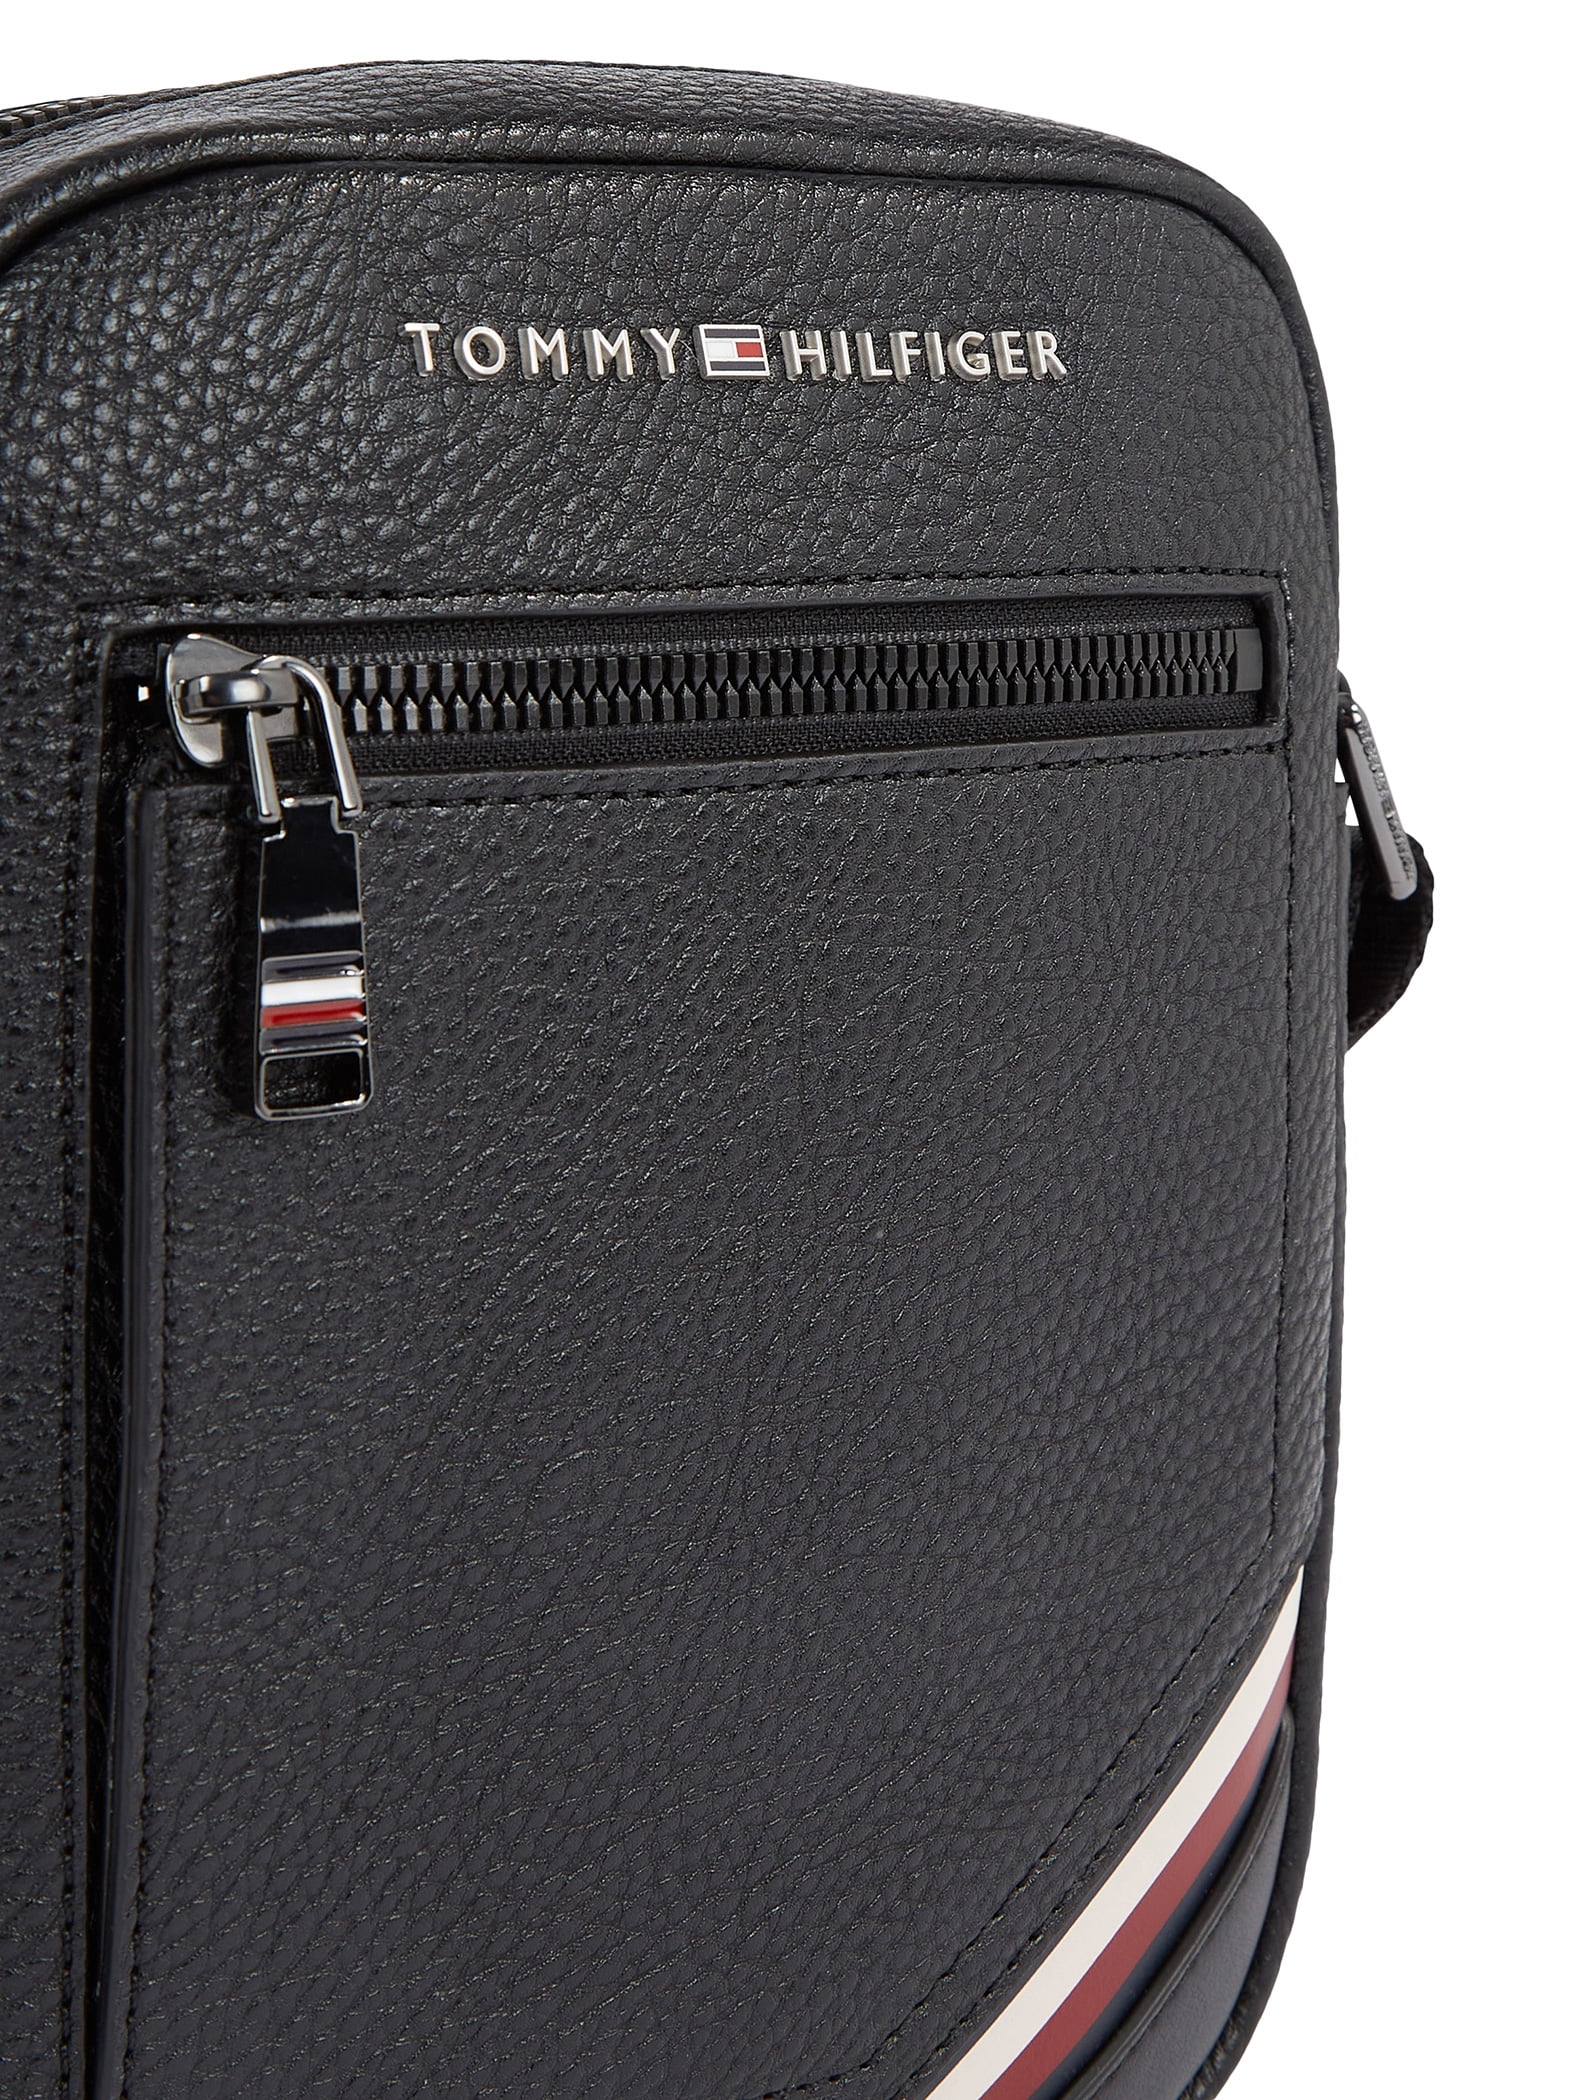 Black Reporter Bag, Mini Central Tommy Hilfiger